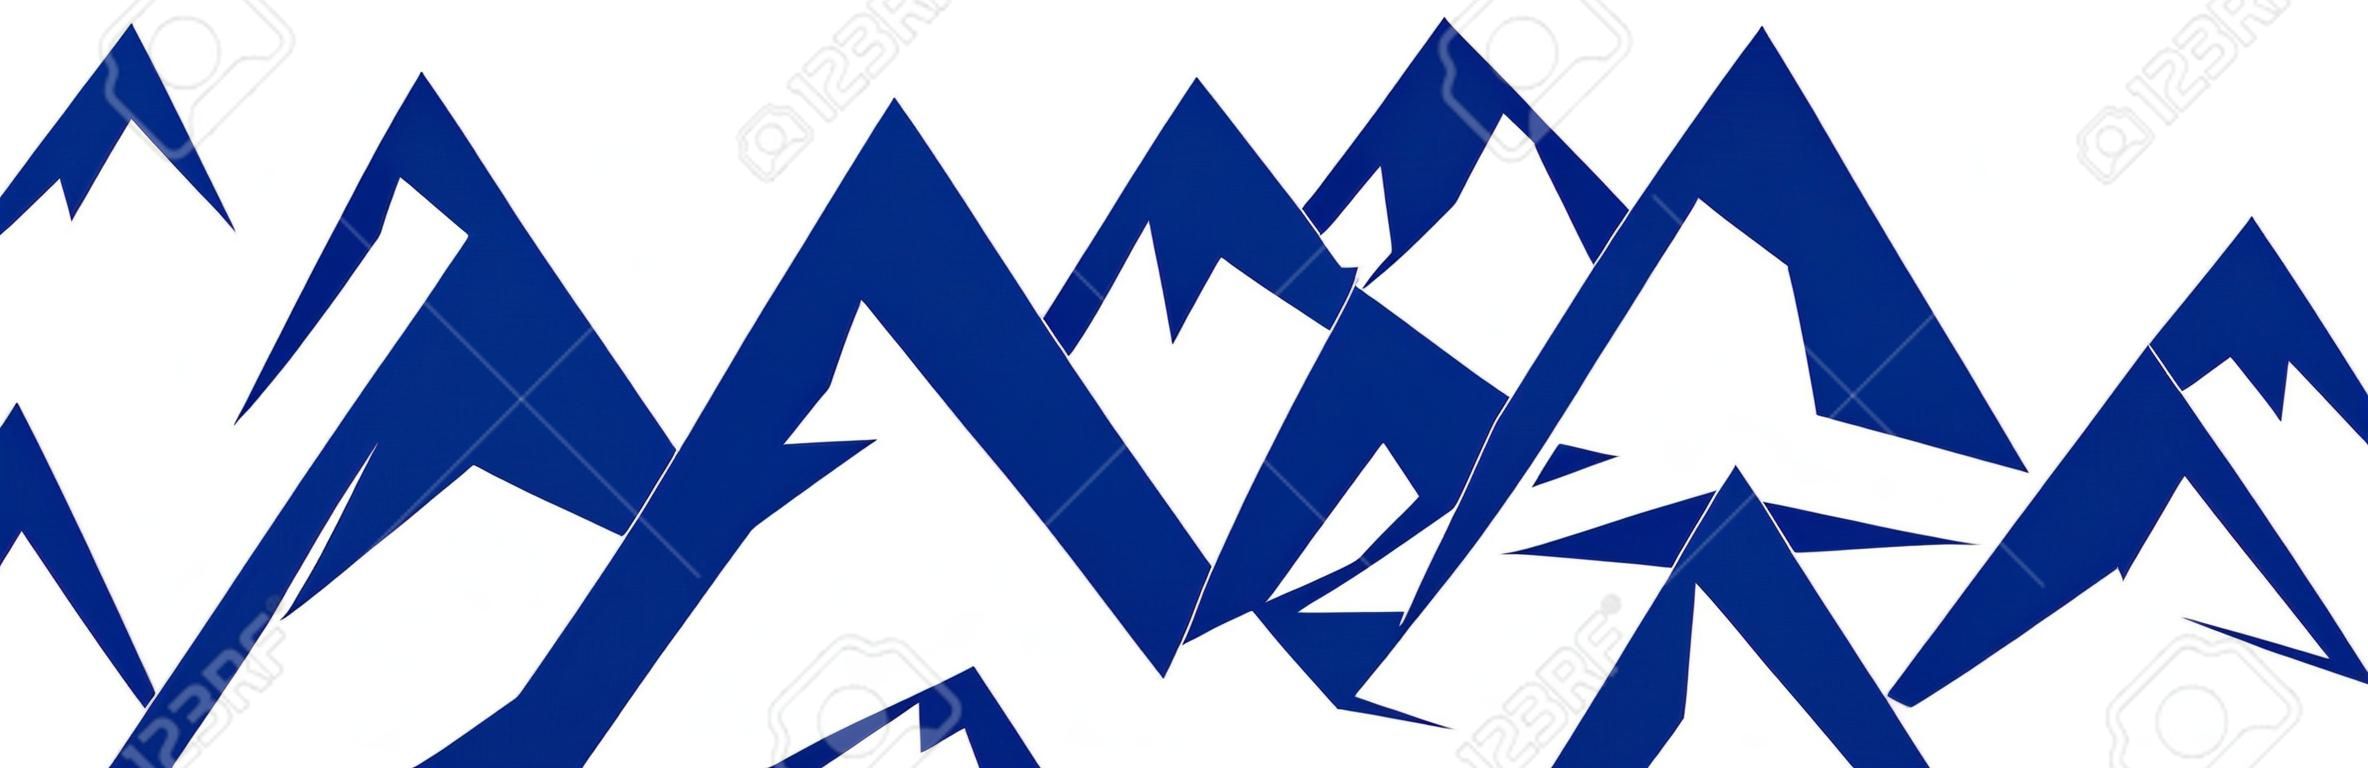 Montaña azul silueta con tres picos sobre fondo blanco - vector